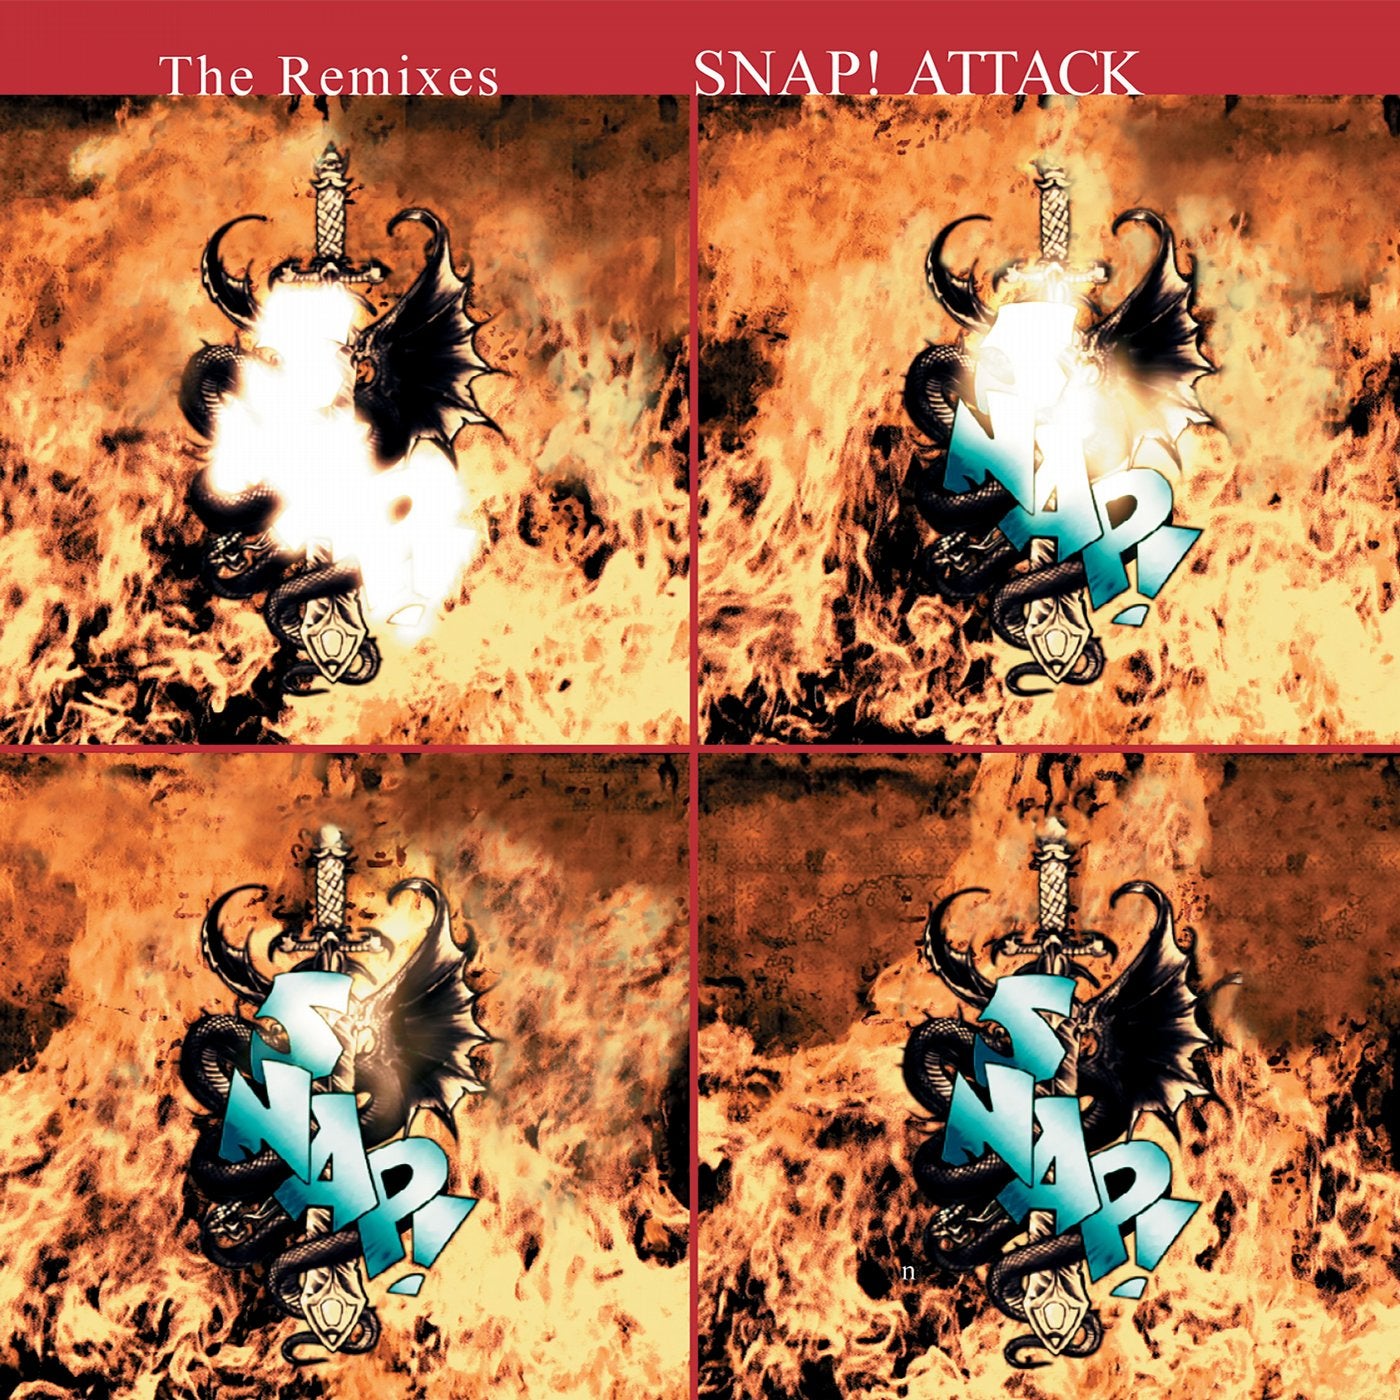 Attack: The Remixes, Vol. 1